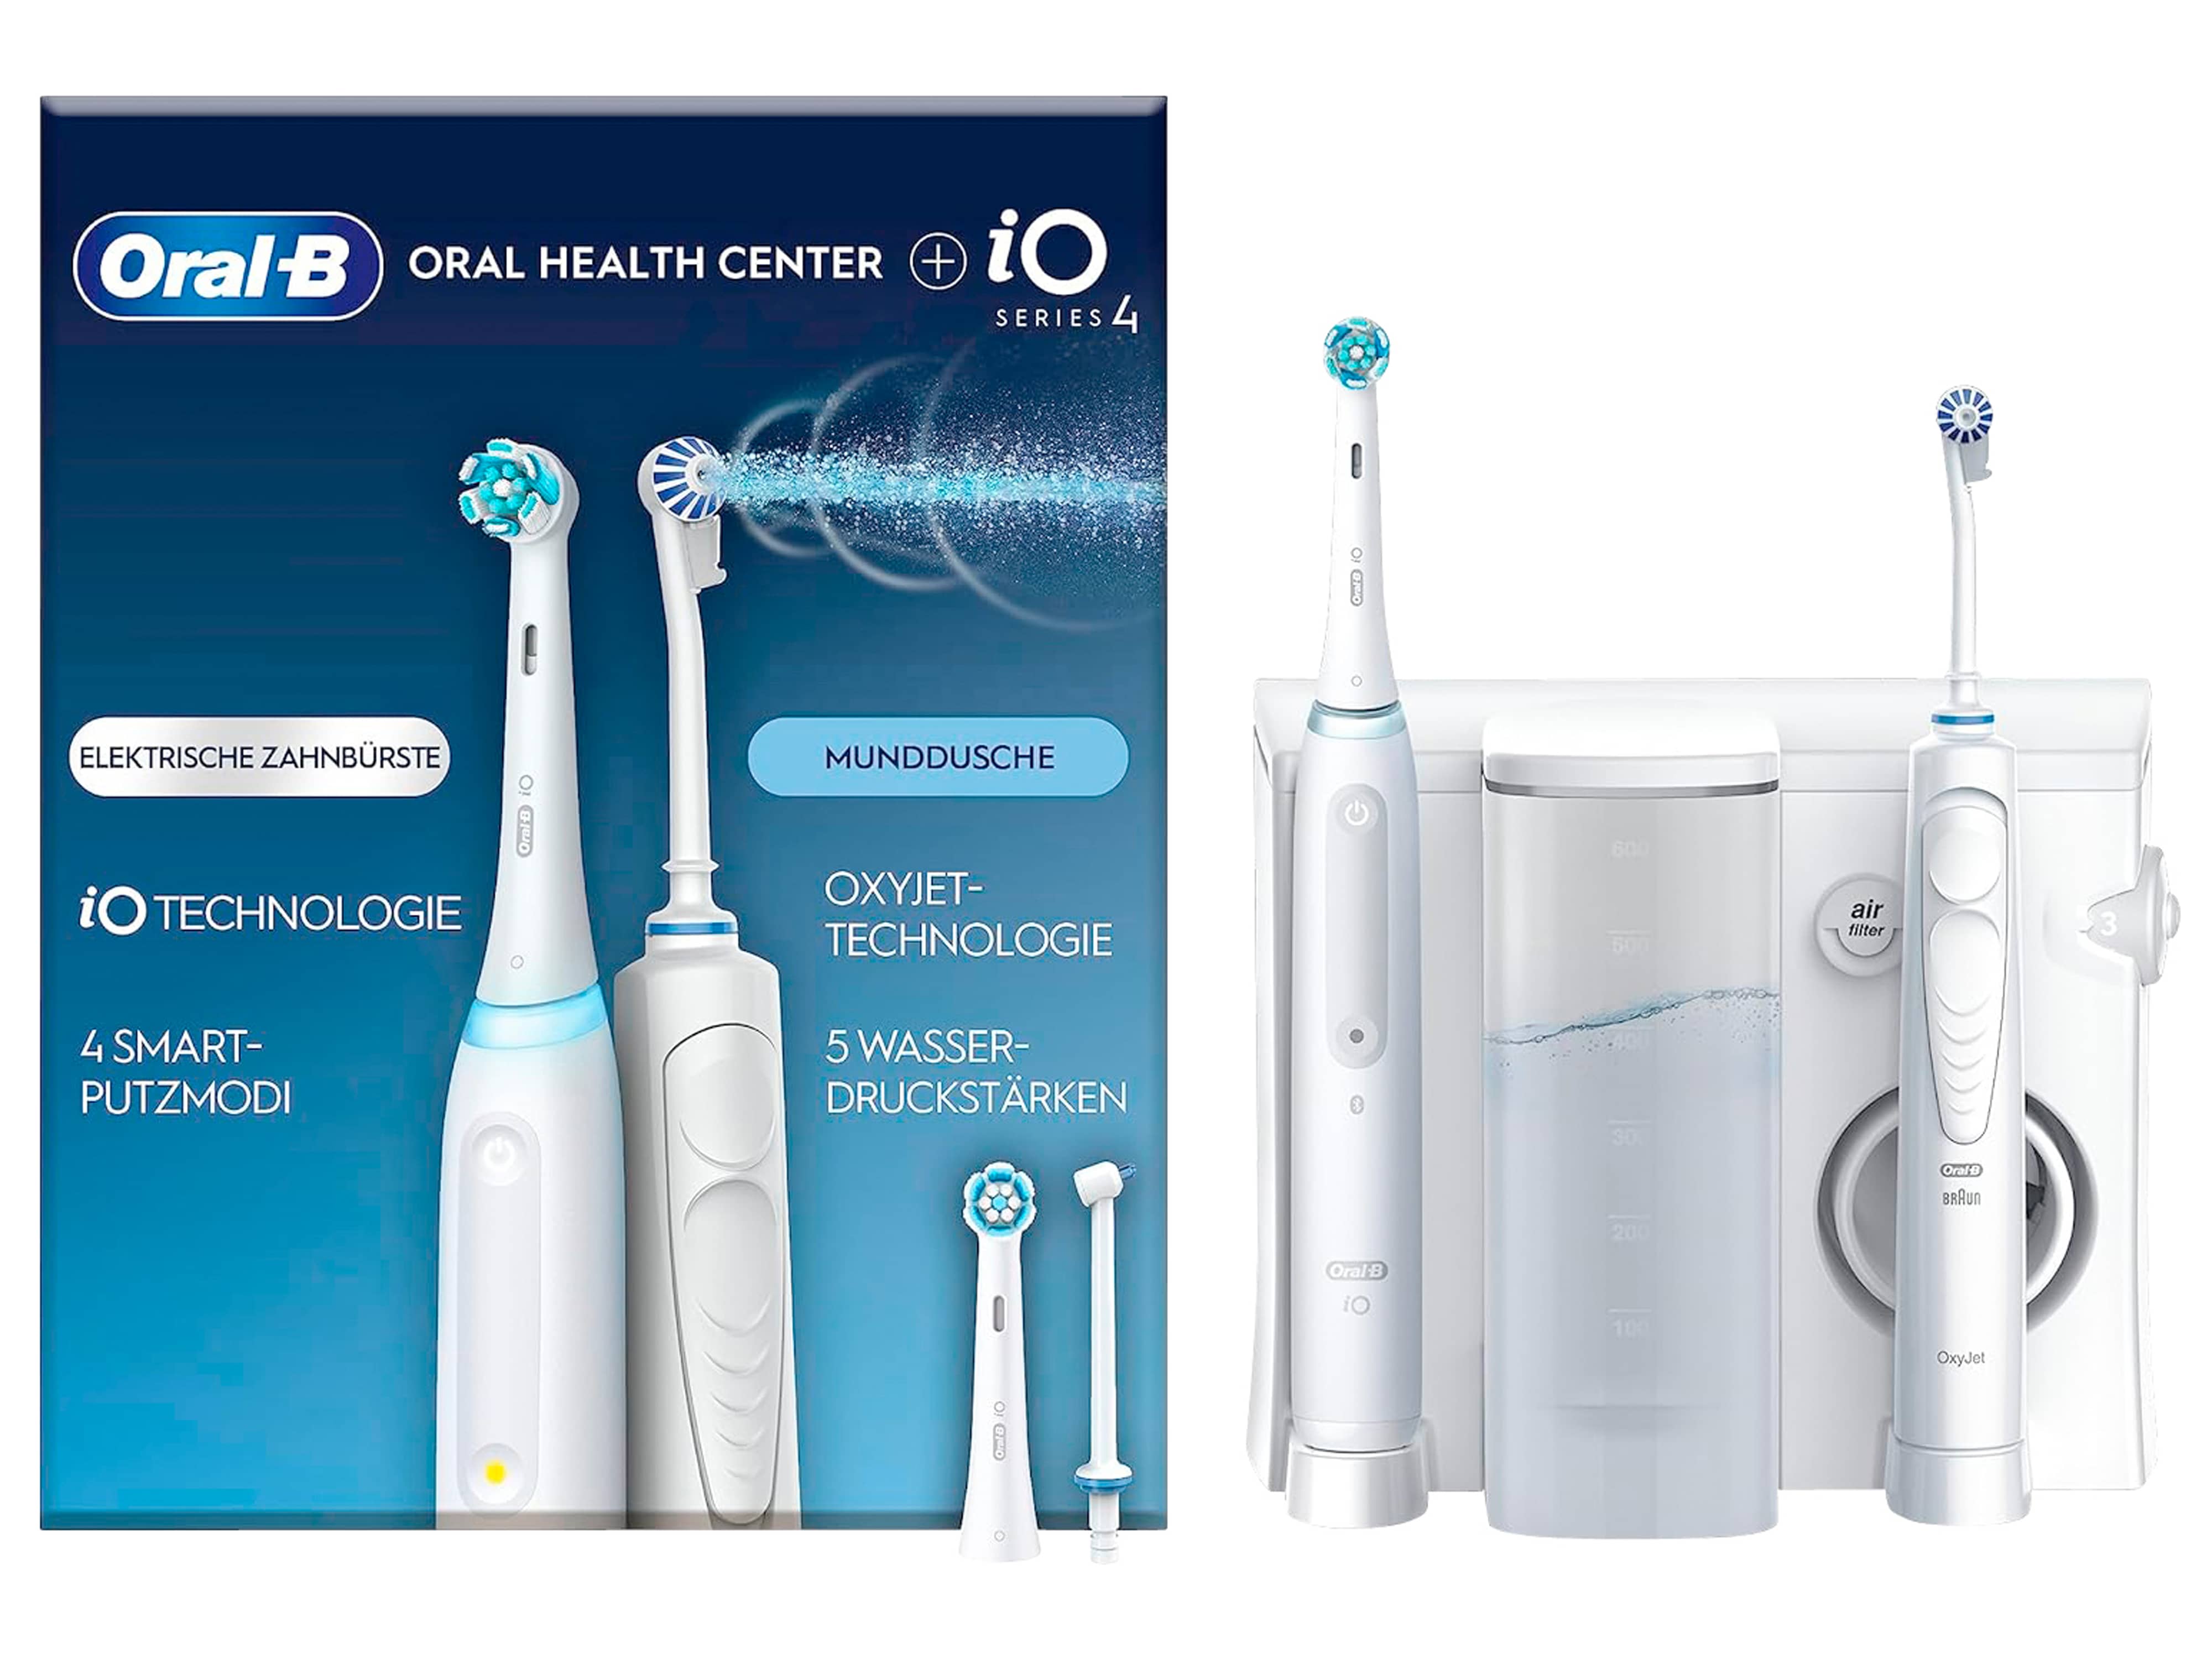 ORAL-B Elektrische Zahnbürste Oral Health Center + iO Series 4